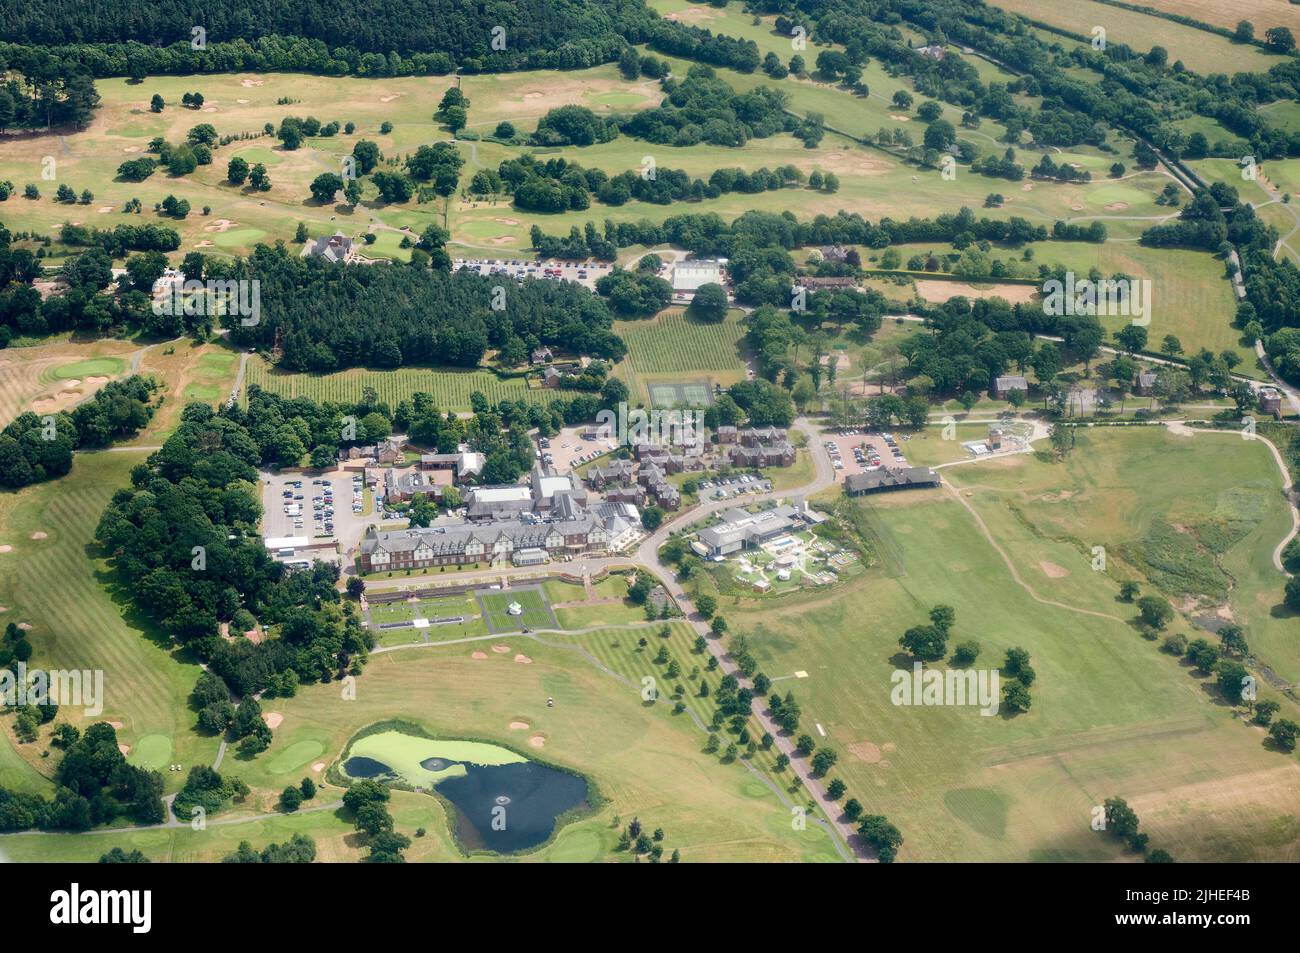 Eine Luftaufnahme des Carden Park Hotel and Park, Chenshire, Nordwestengland, Großbritannien Stockfoto